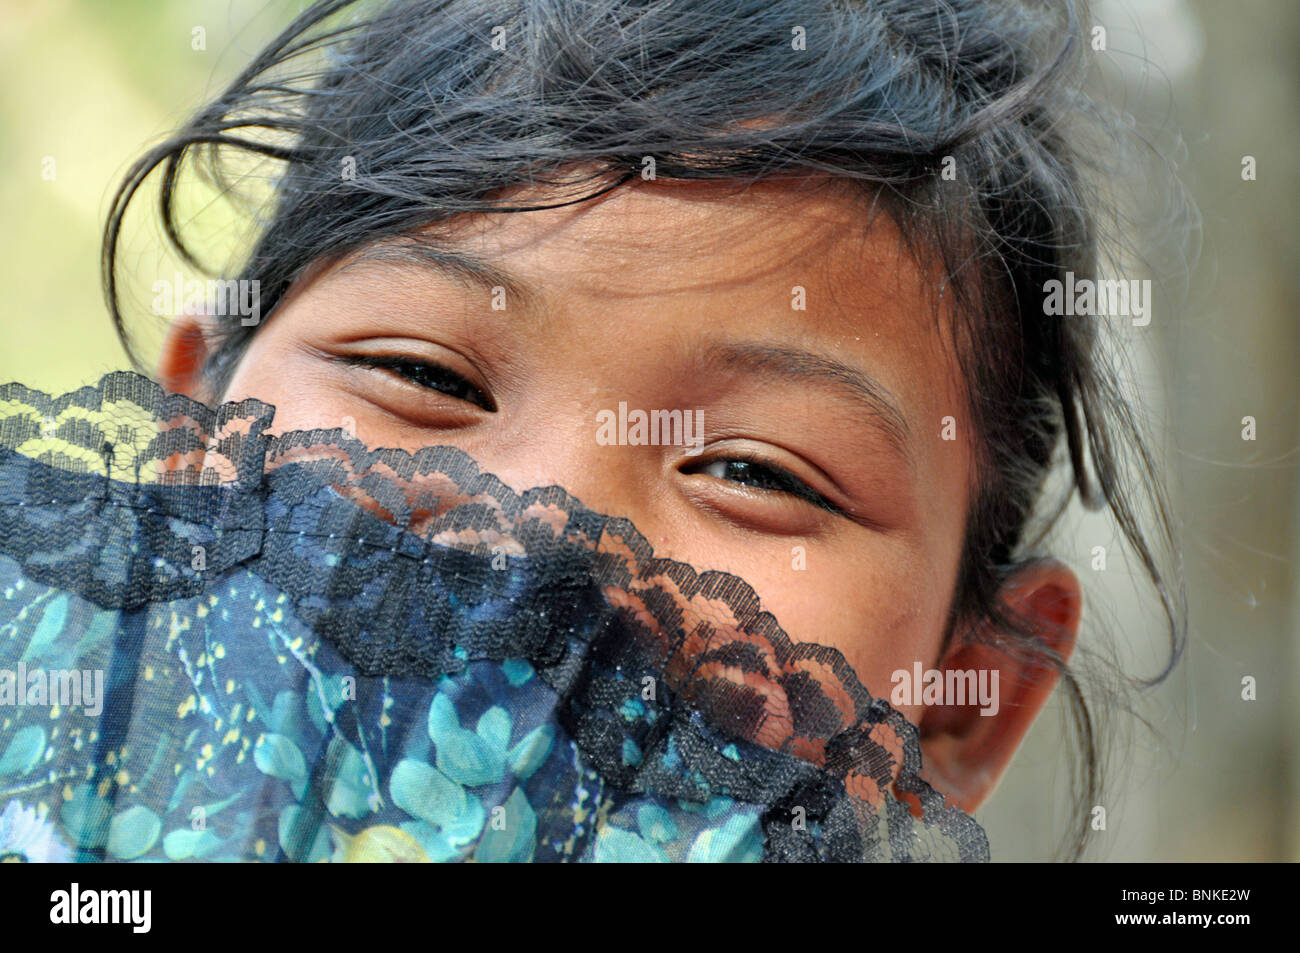 Asien Kambodscha Person Person Mädchen asiatische asiatische kleine jung Kind lacht schelmisch verführerisch Felder Fächer Porträt Stockfoto